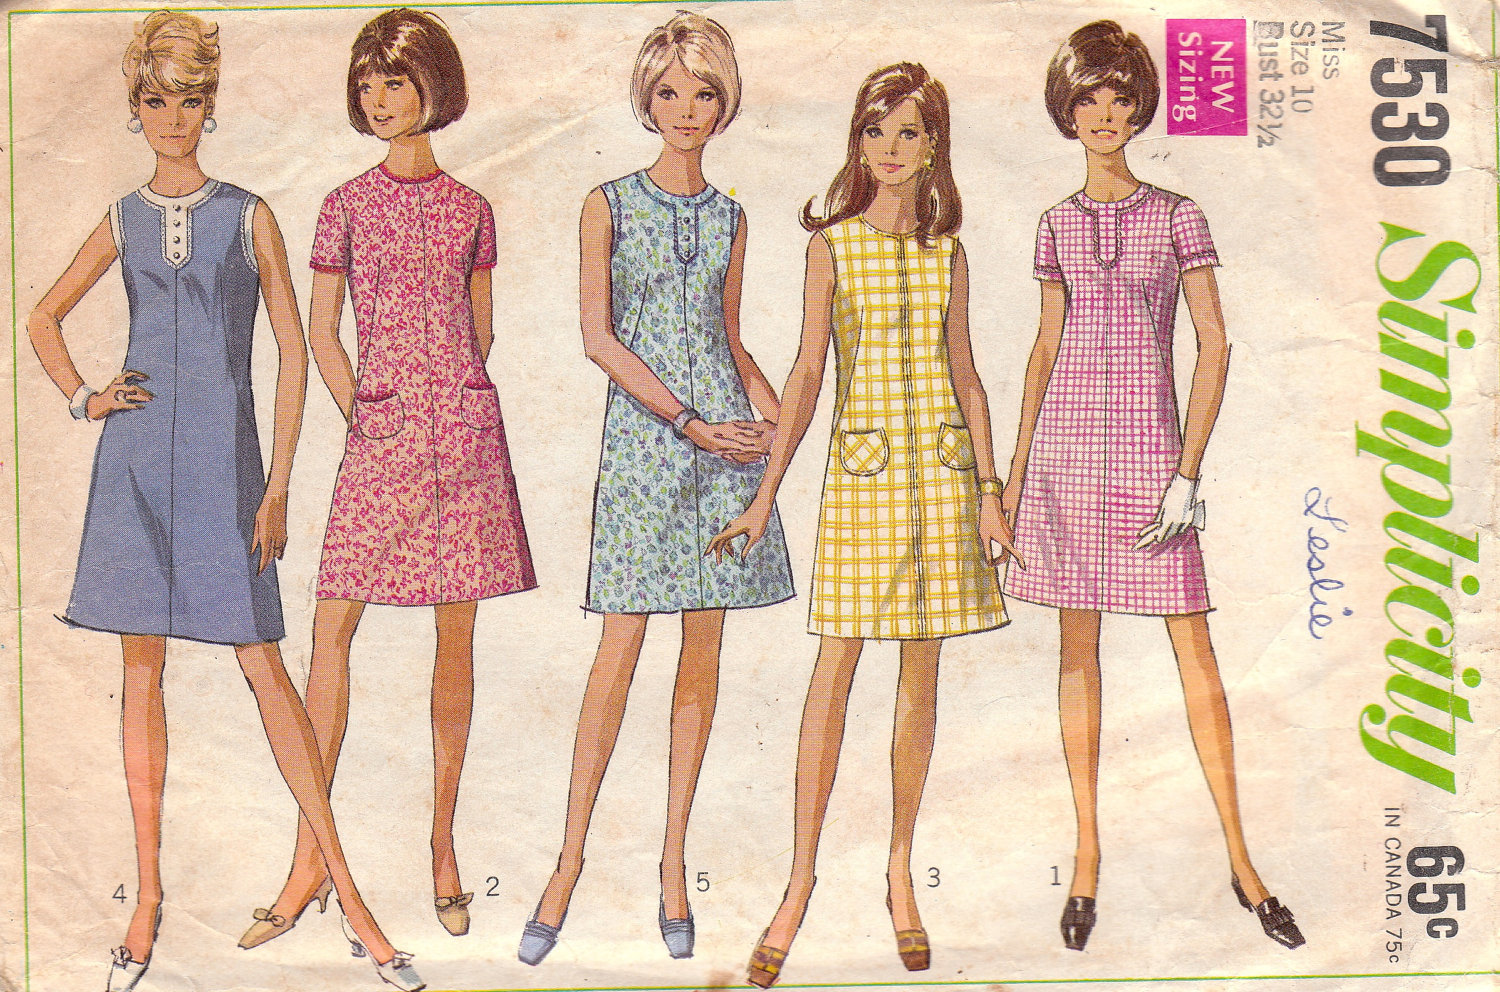 1967 Summer of Love Wardrobe Inspiration.